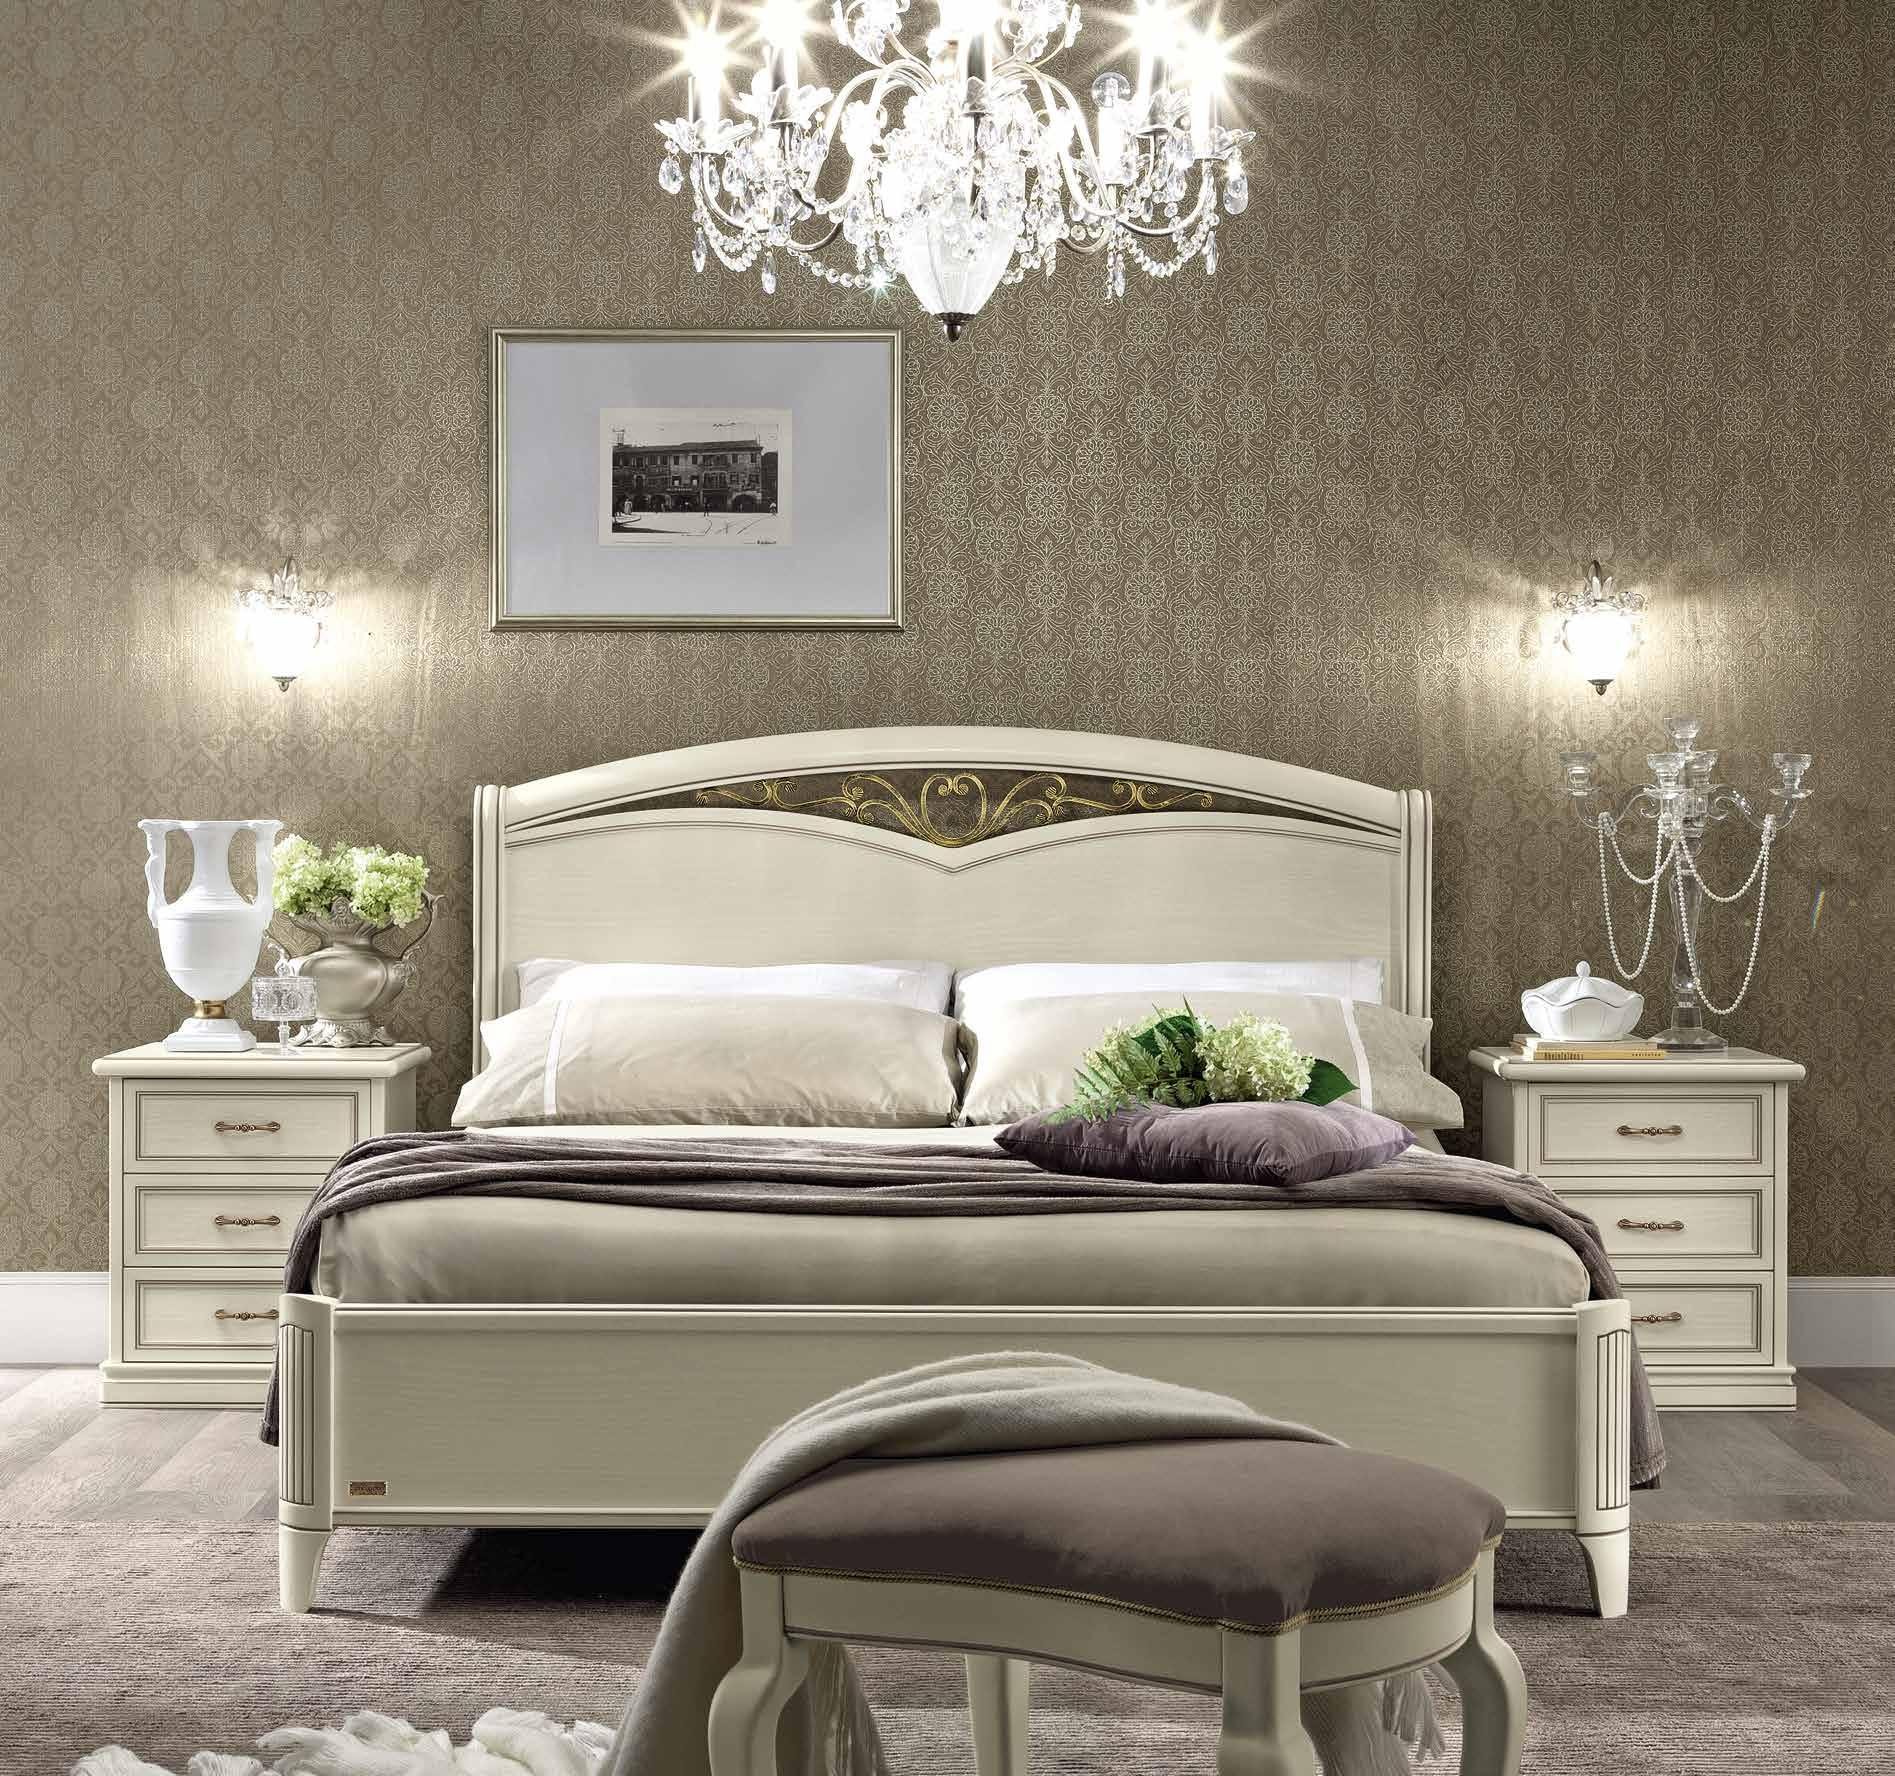 Кровать Nostalgia Bianco Antico, двуспальная, без изножья, цвет: белый антик, 180x200 см (085LET.17BA)085LET.17BA